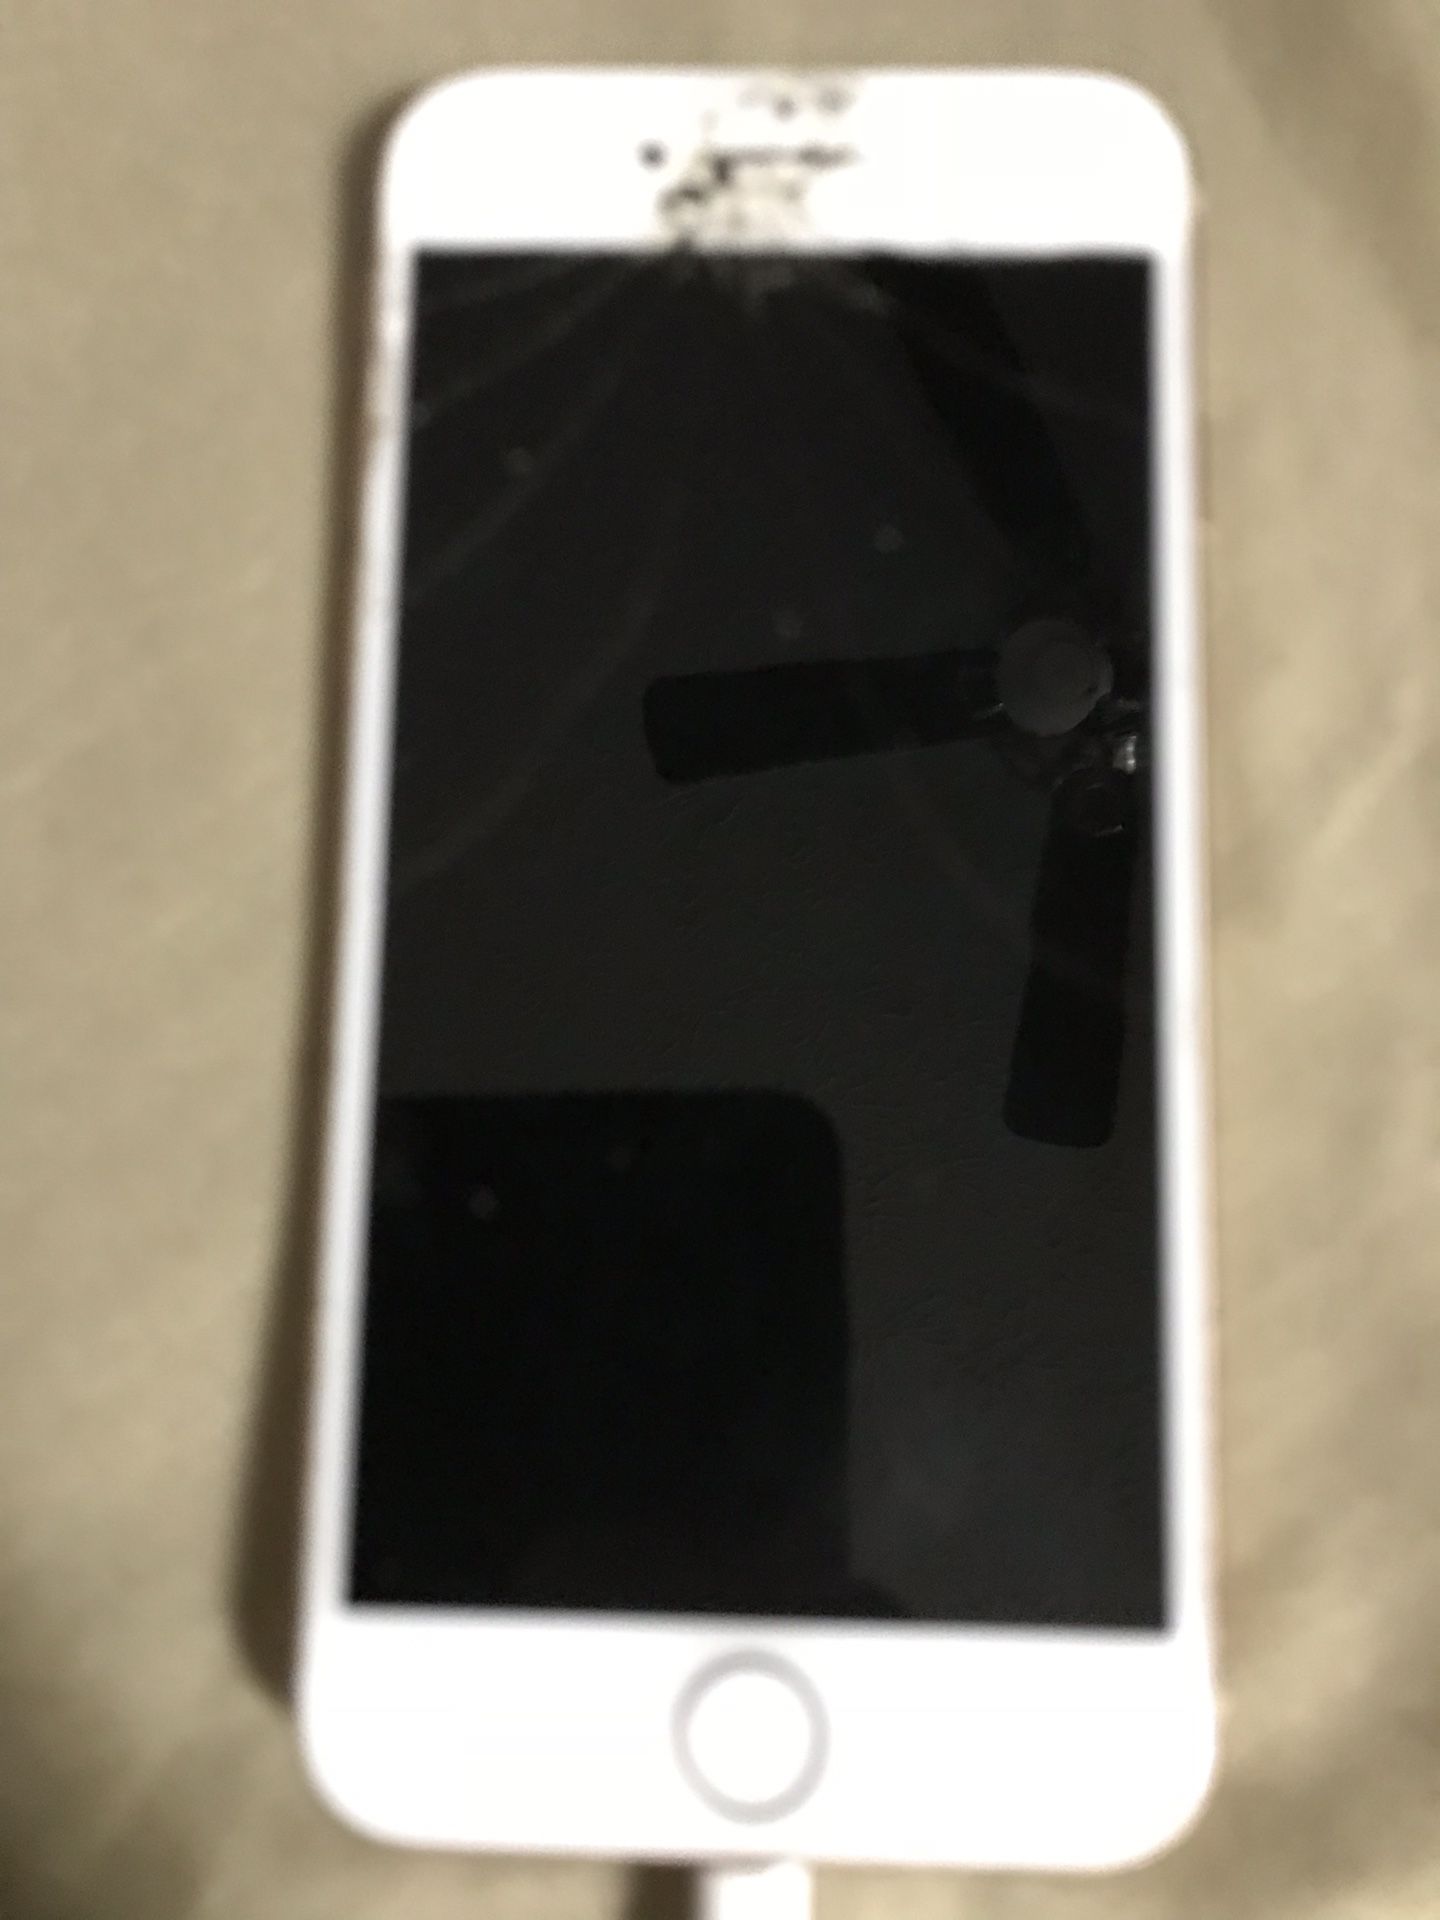 iPhone 8 ICloud Locked